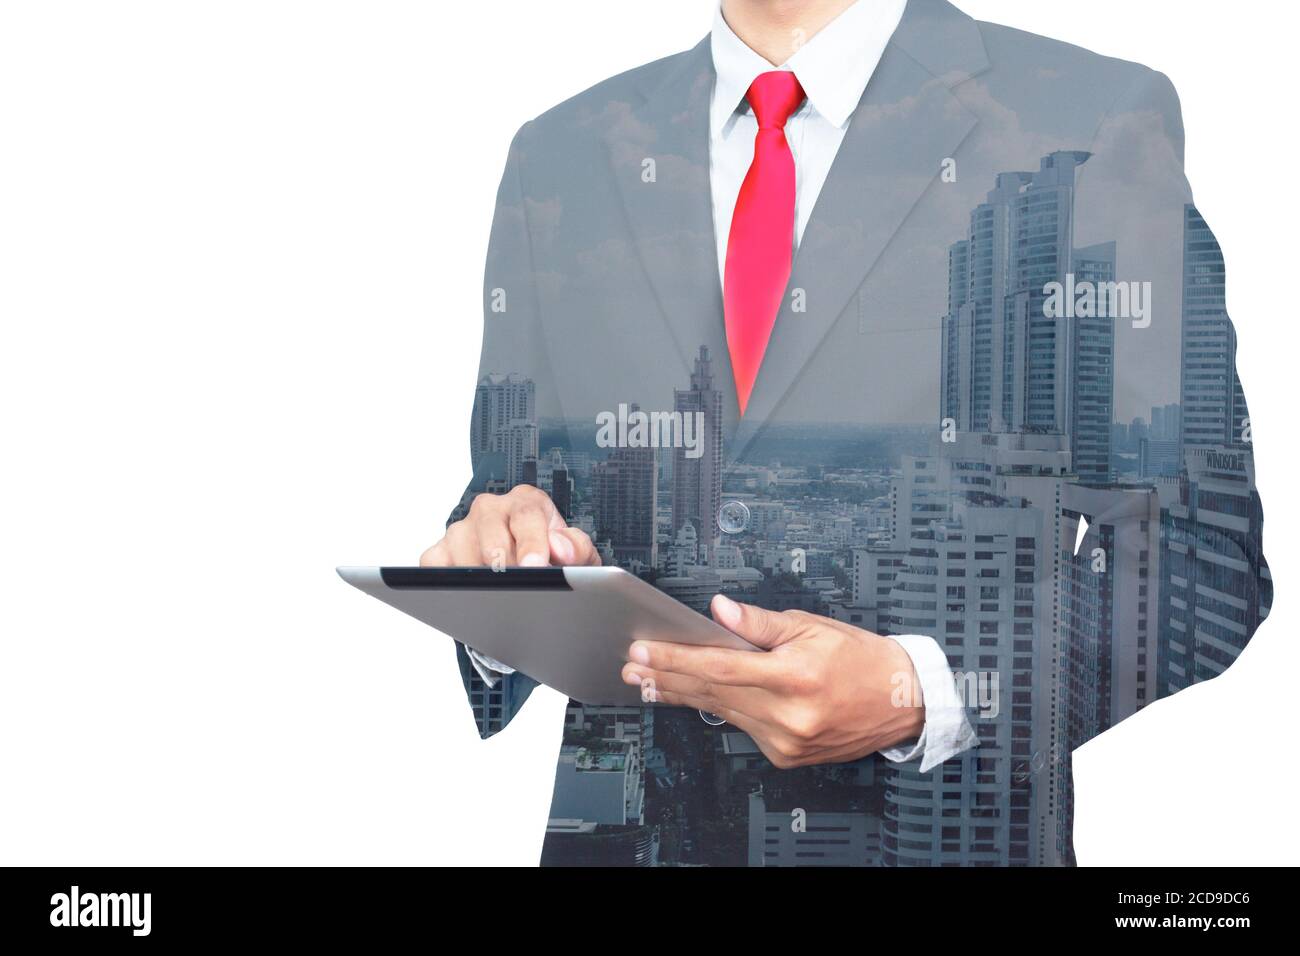 Foto a doppia esposizione. Uomo d'affari che tocca un tablet moderno. Progetto bancario di lavoro del responsabile degli investitori, volto anonimo Foto Stock